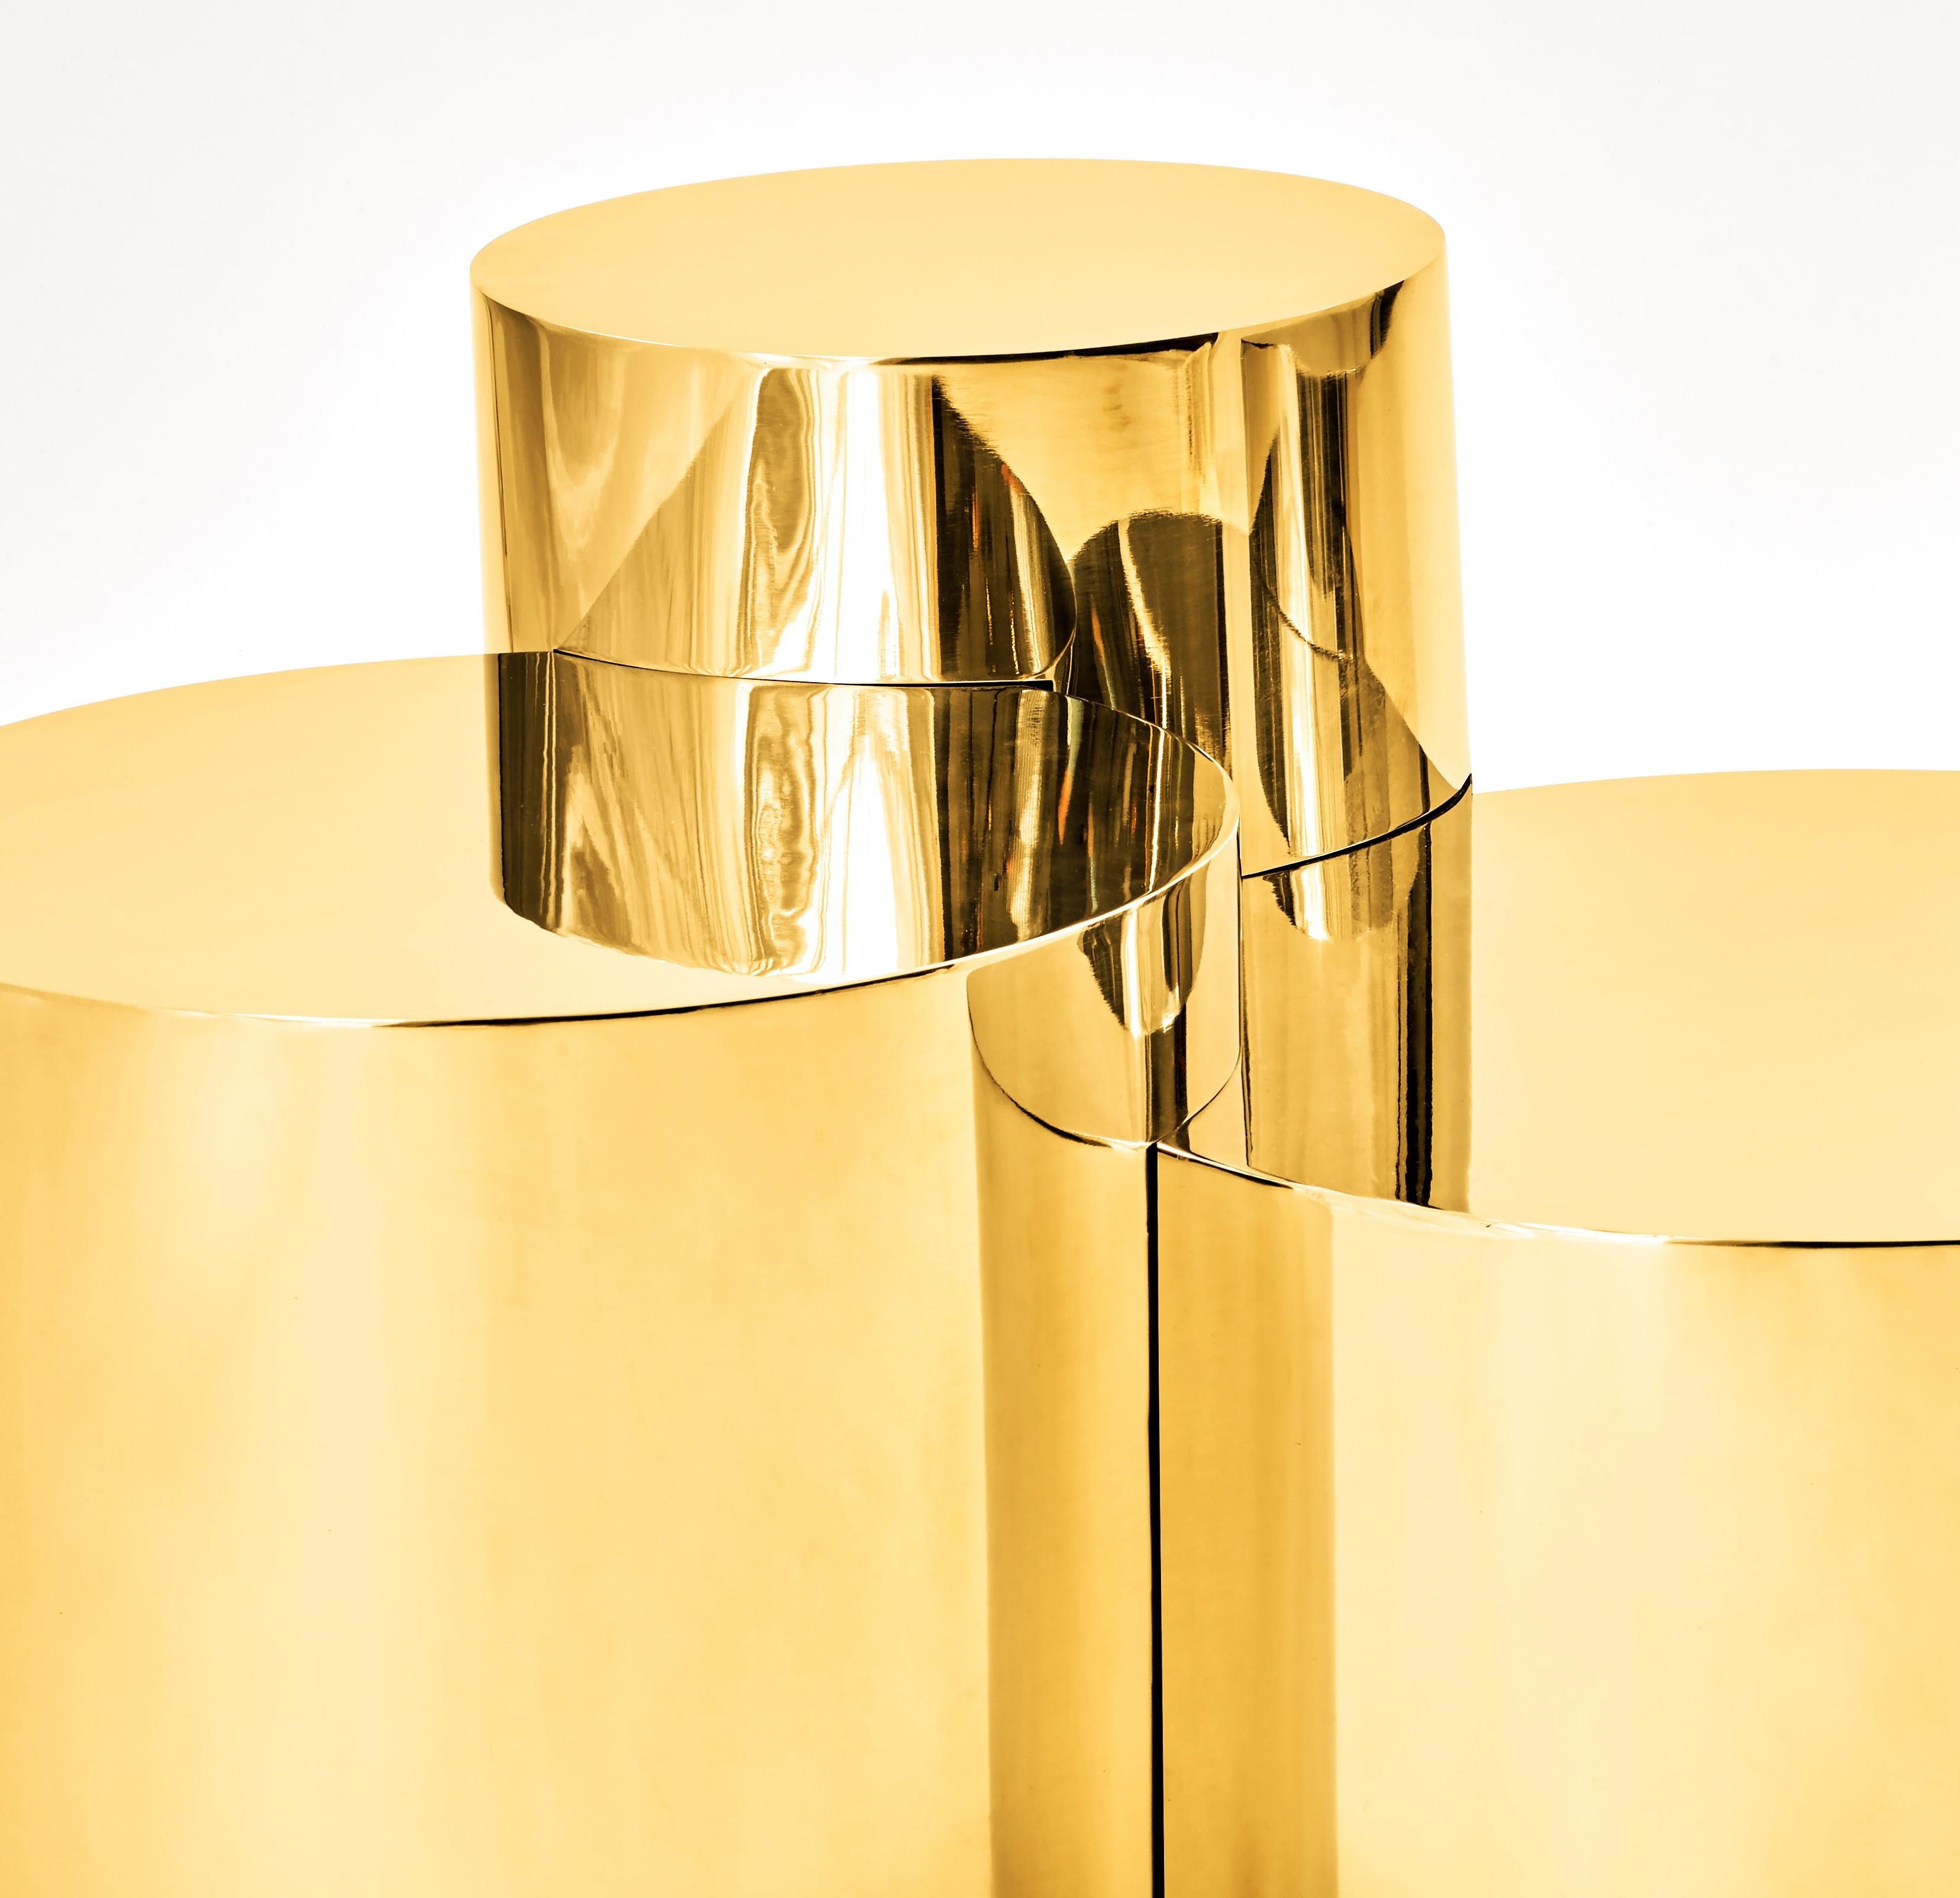 Der Tisch Geometria: Cerchi 4 hebt die minimalistische Form des Zylinders hervor, indem er sie miteinander verbindet und überlappt, um ein sehr skulpturales Stück zu schaffen.

Anpassungsoptionen:
Jedes Stück wird in Italien handgefertigt und kann